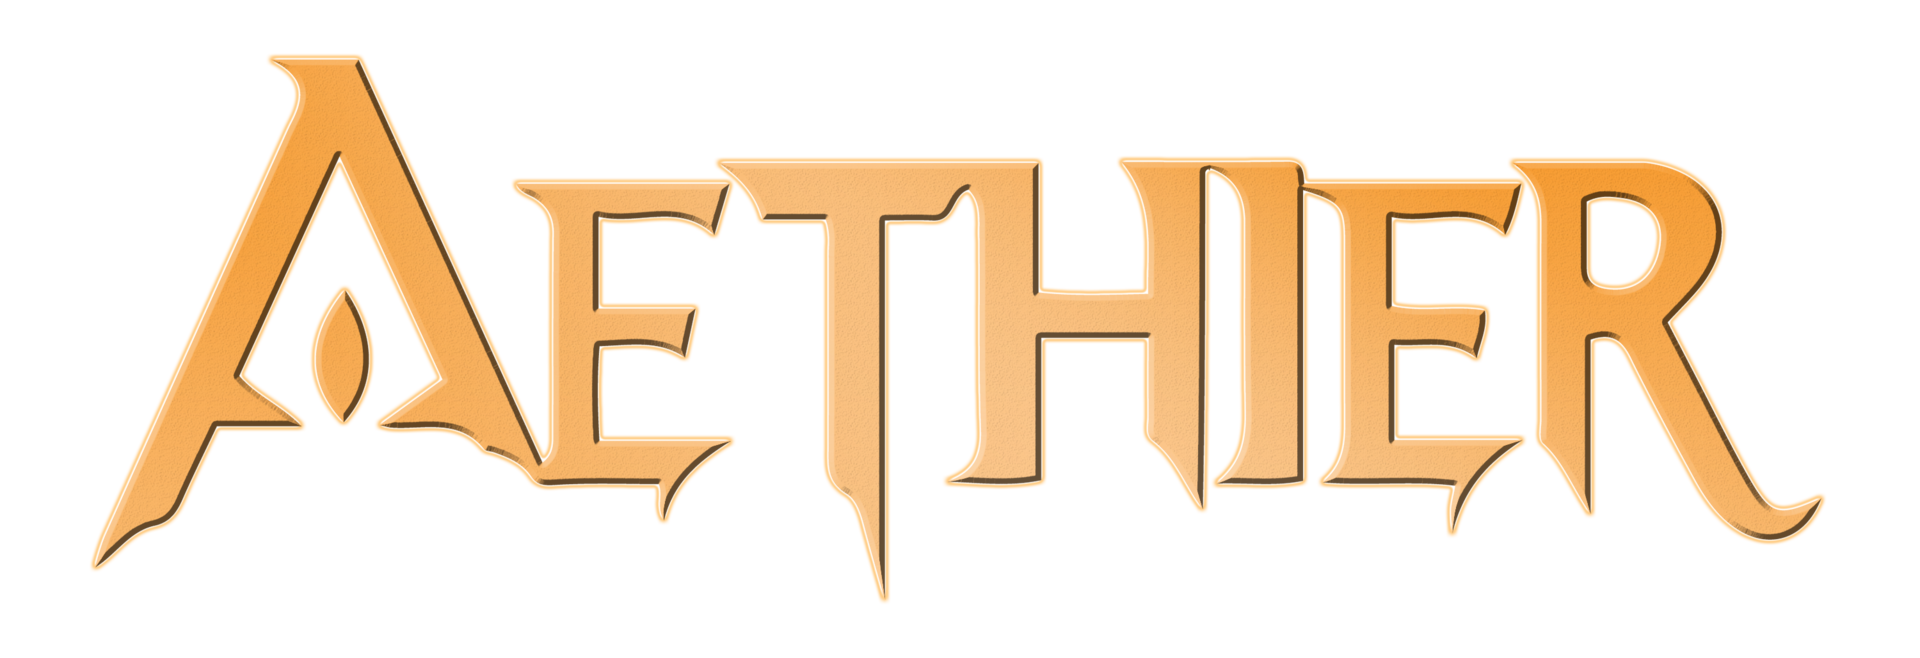 Aethier Logo